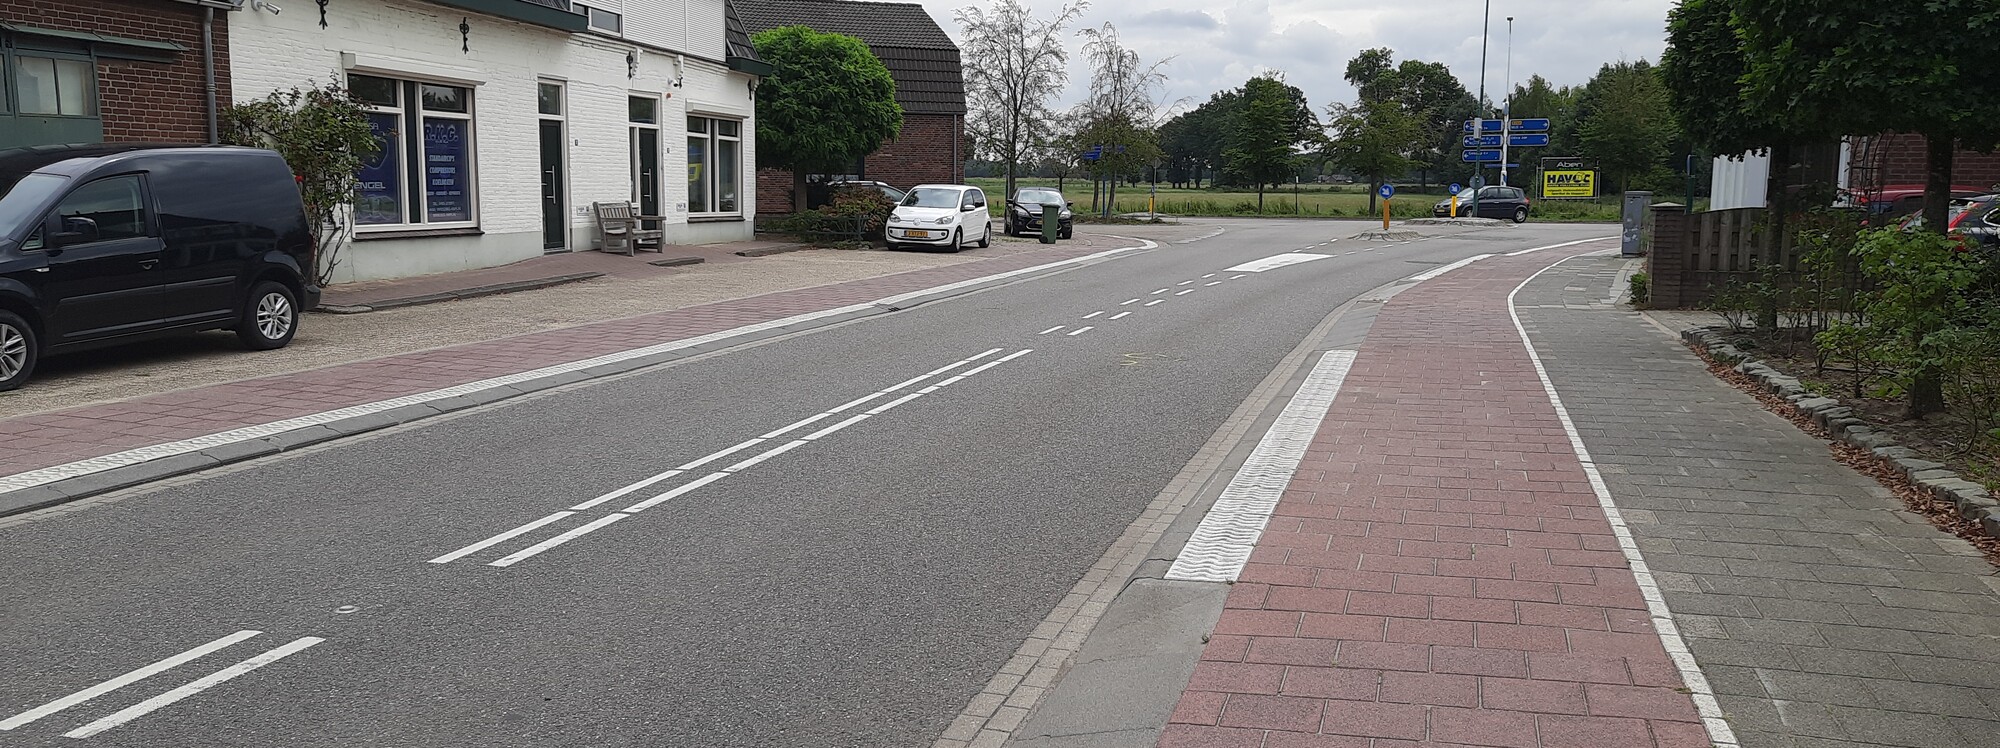 Aanleg rotonde Kerkstraat en aanpassing kruising Sint Hubertseweg